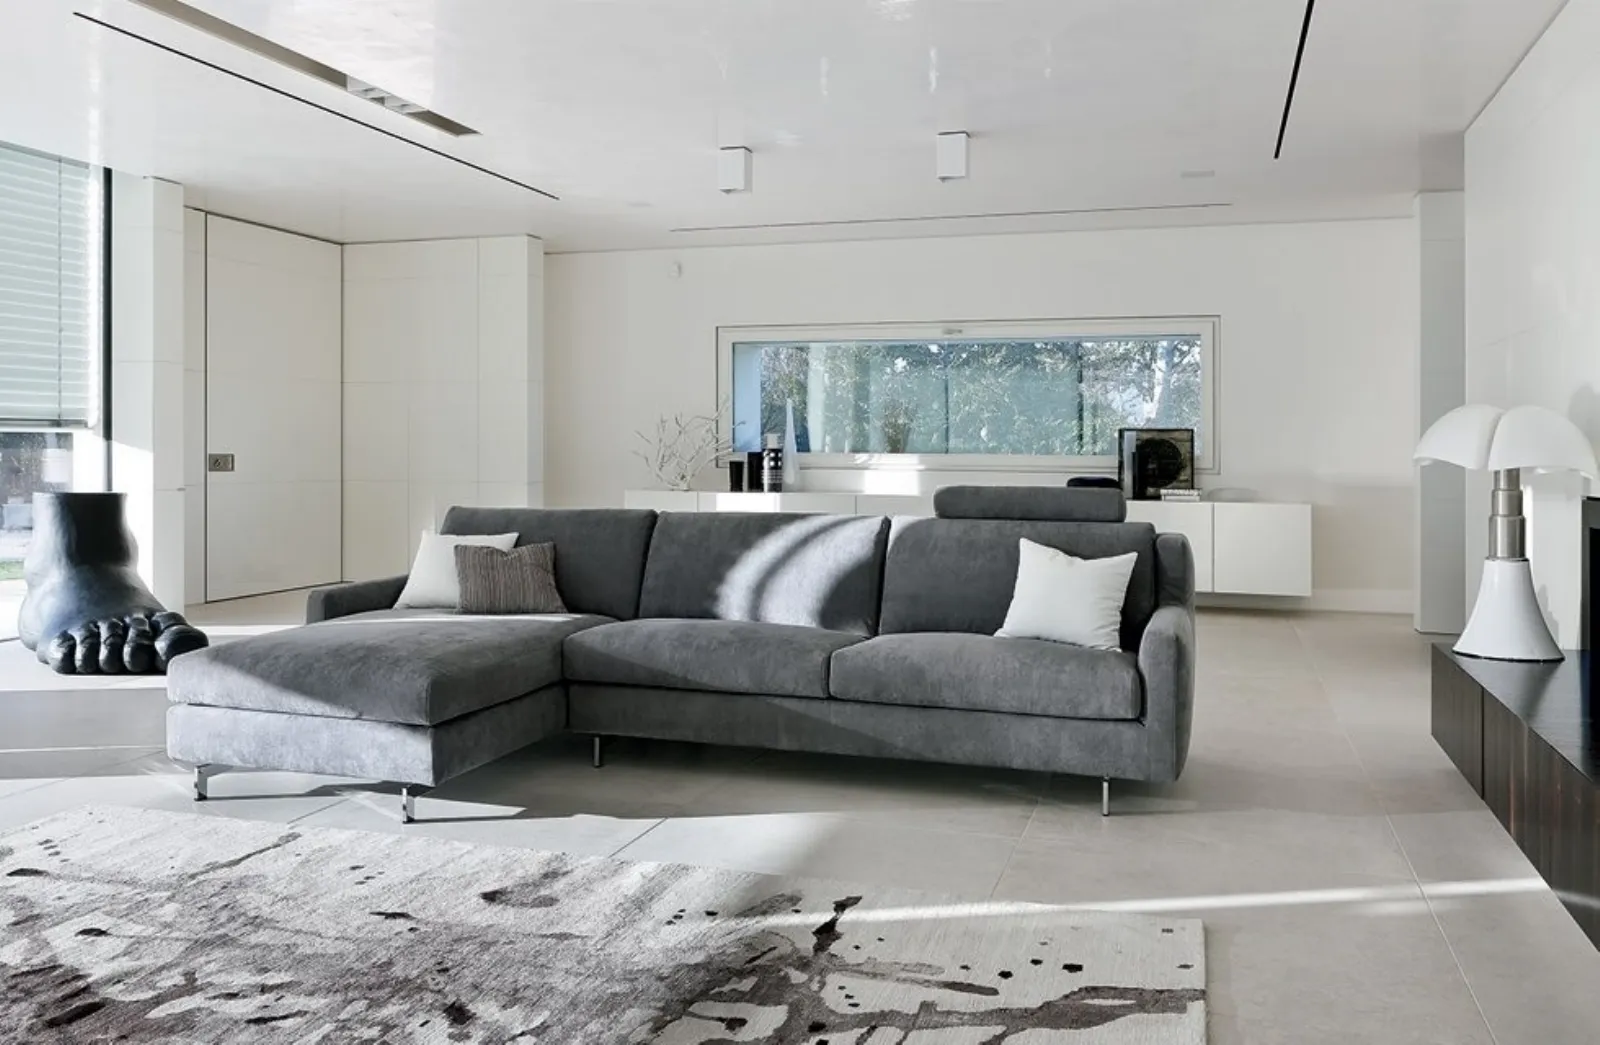 Outlet divani risparmiare con divani di pregio consigli for Design arredamento outlet